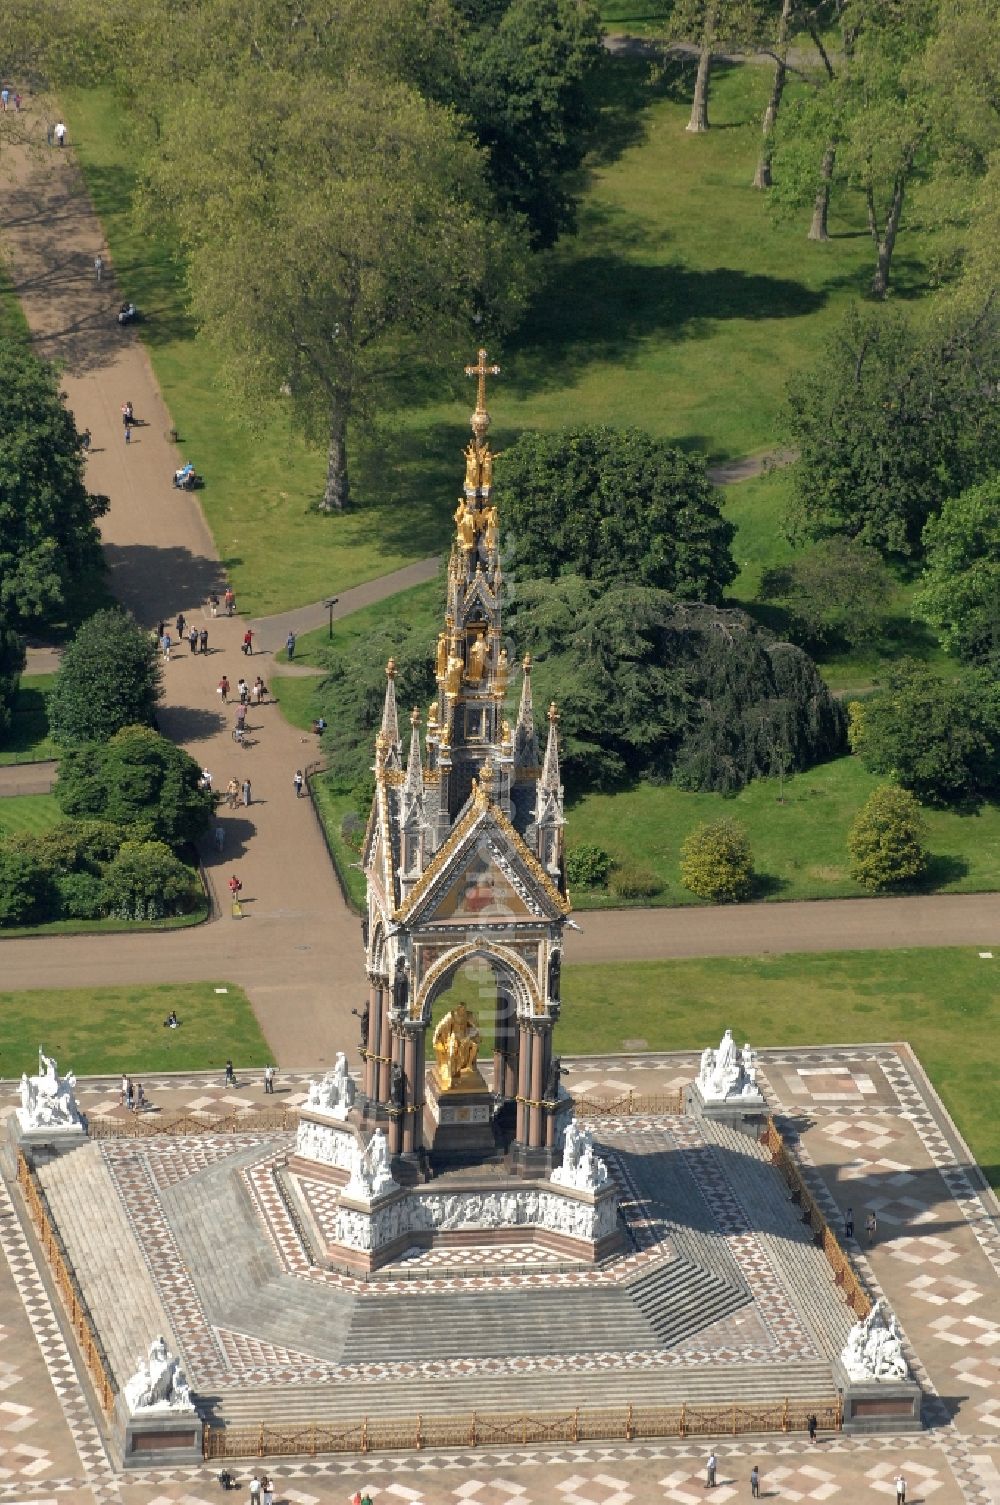 Luftbild London - Albert Memorial im Kensington Gardens in London